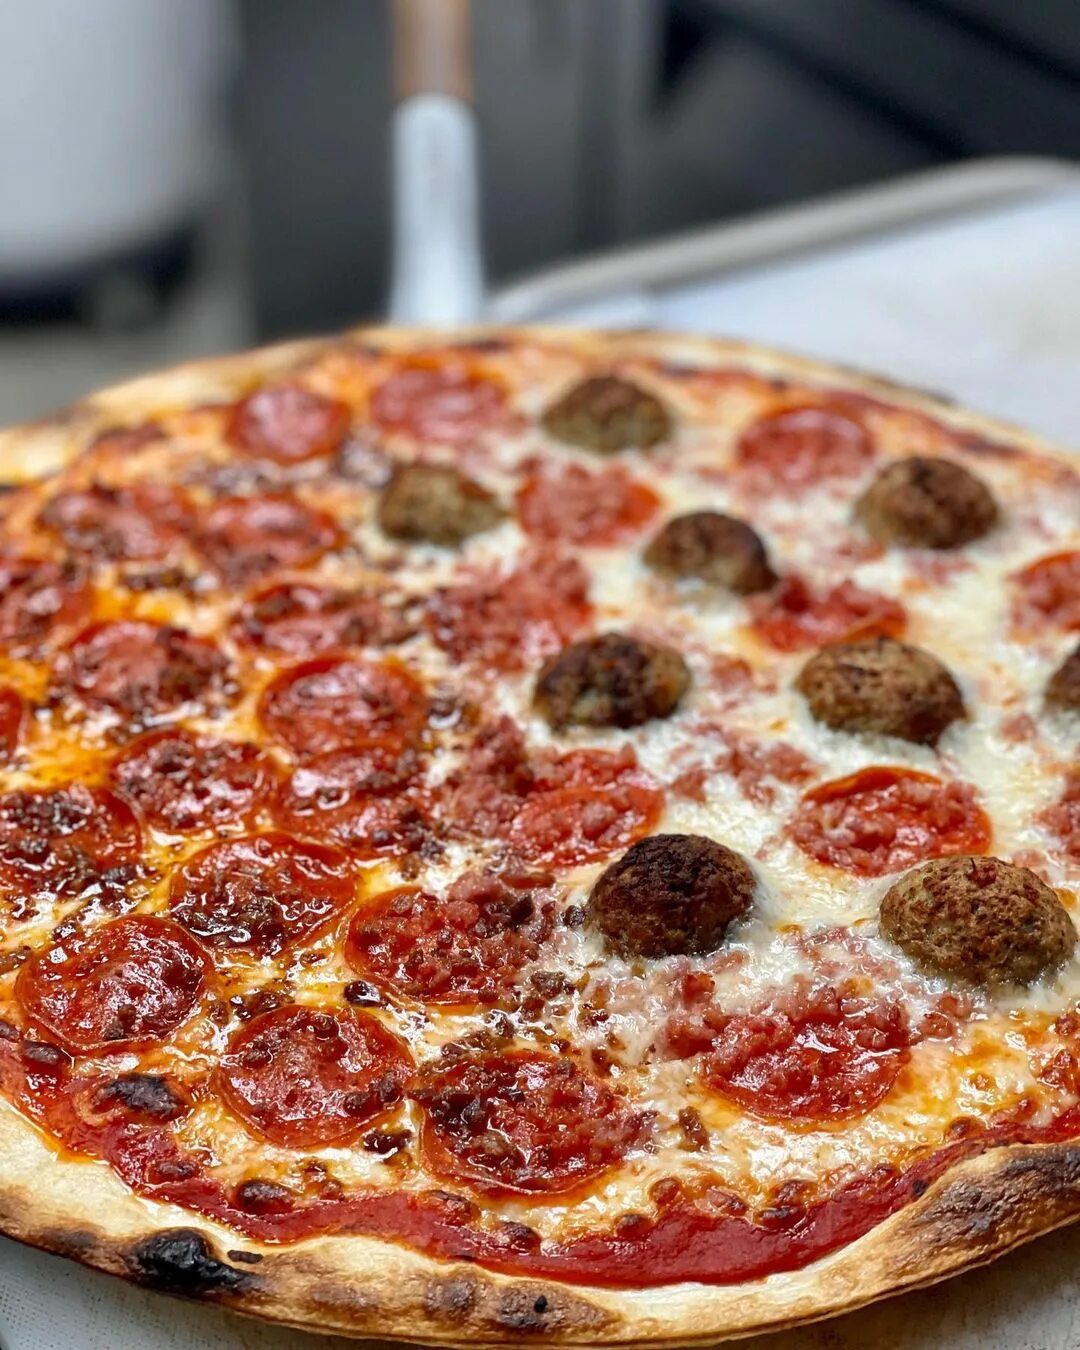 сколько калорий в куске пиццы пепперони из додо фото 110